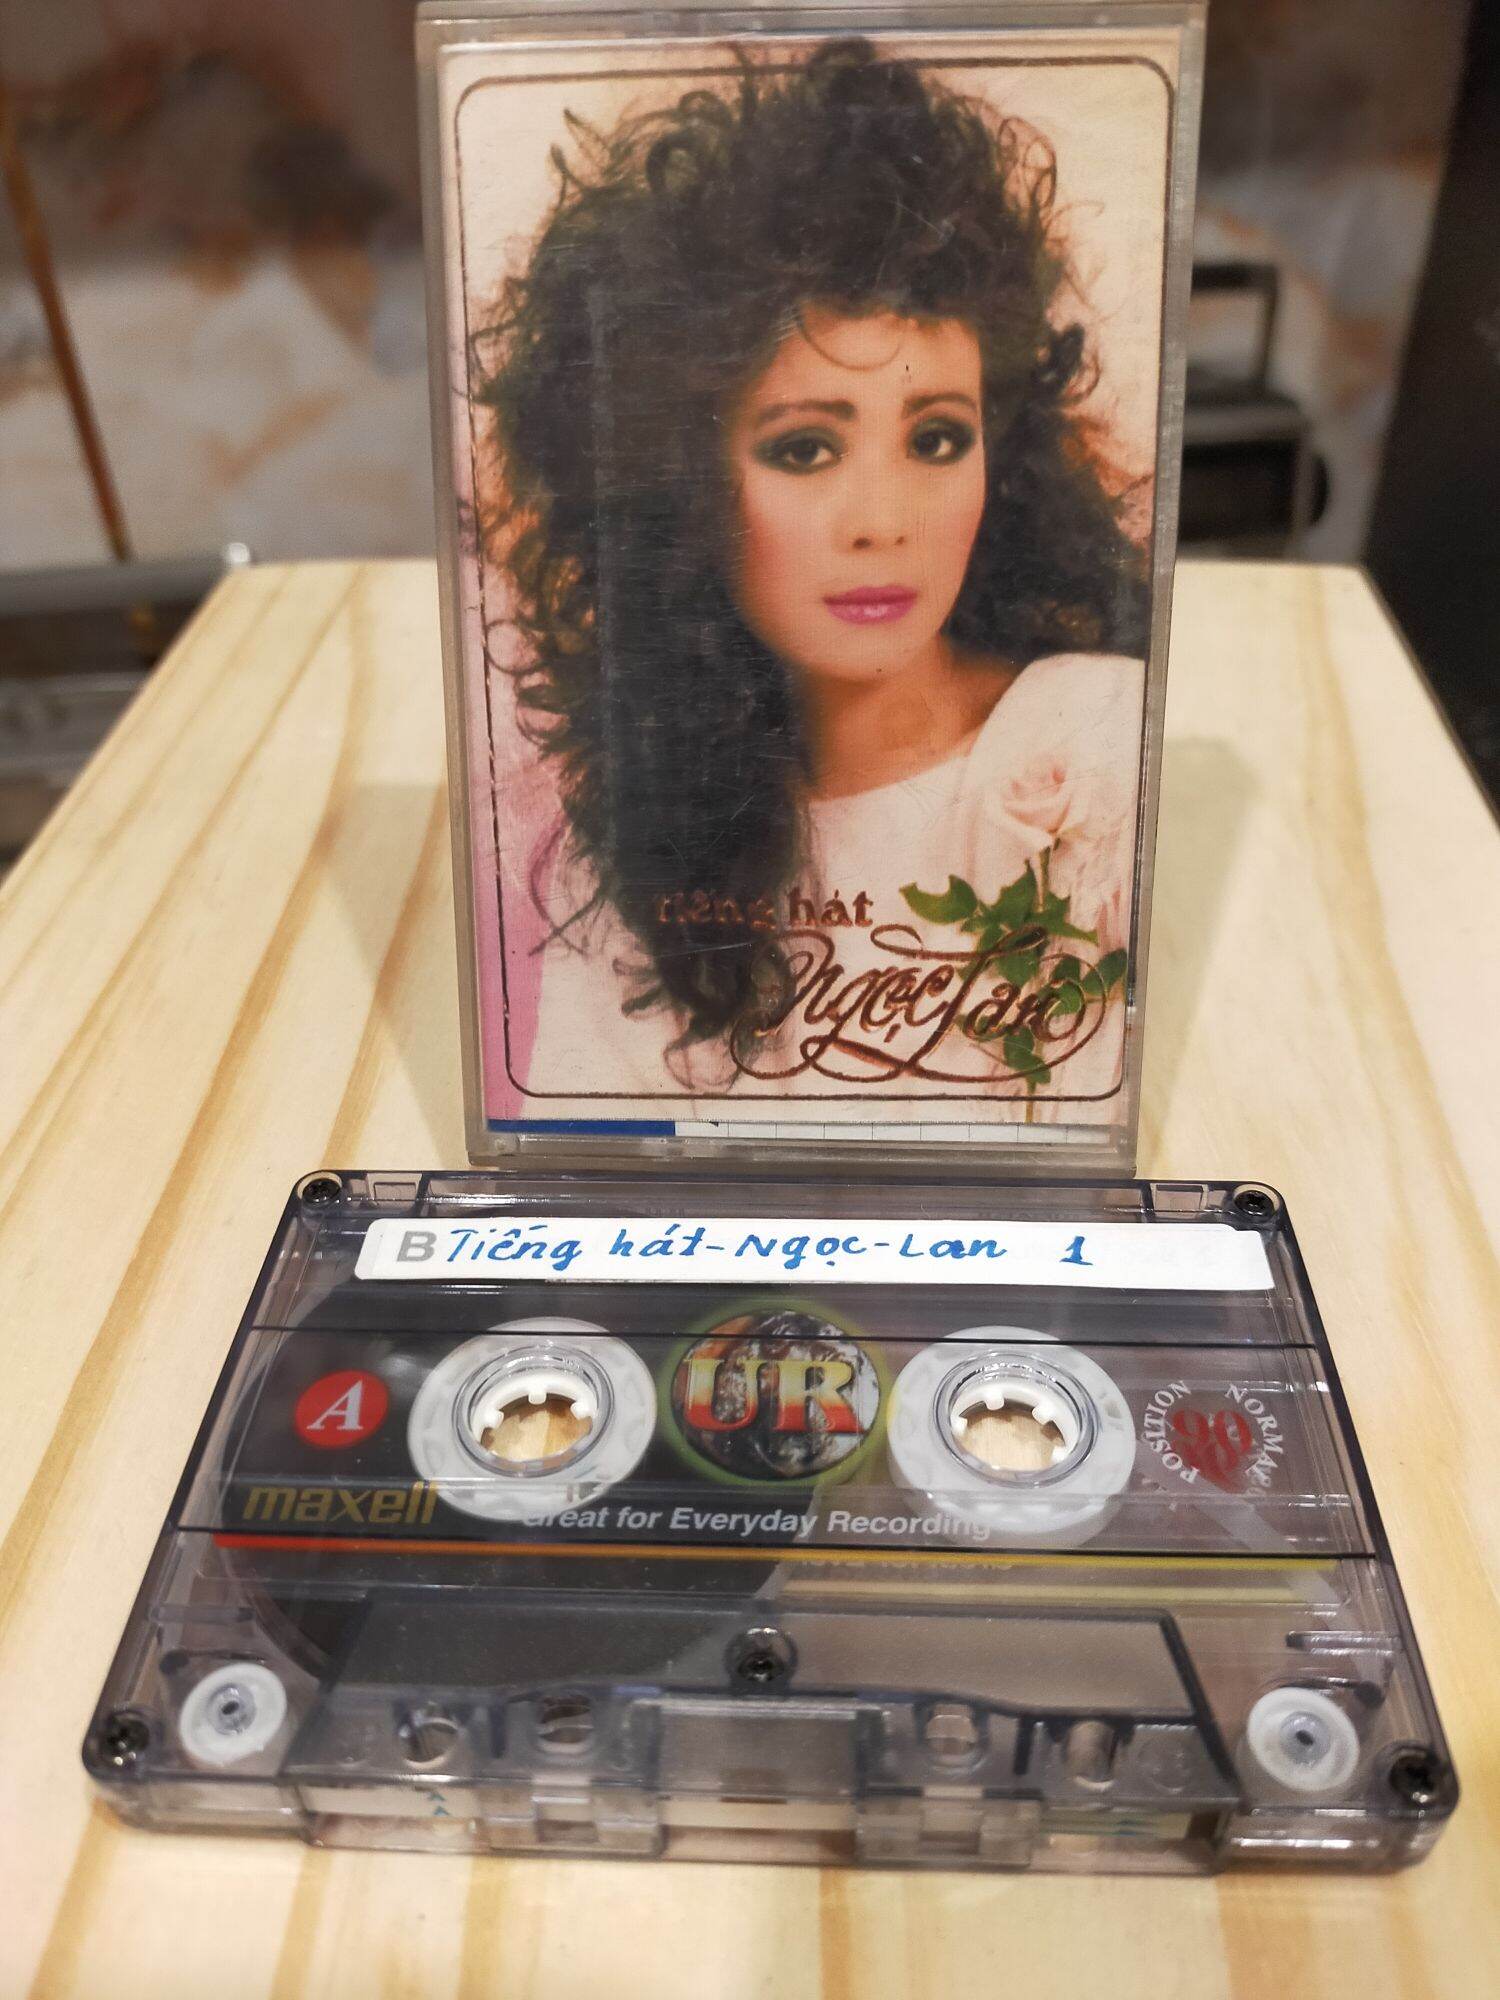 1 băng cassette maxell UR 90 phút tiếng hát ngọc lan( lưu ý: đây là băng cũ